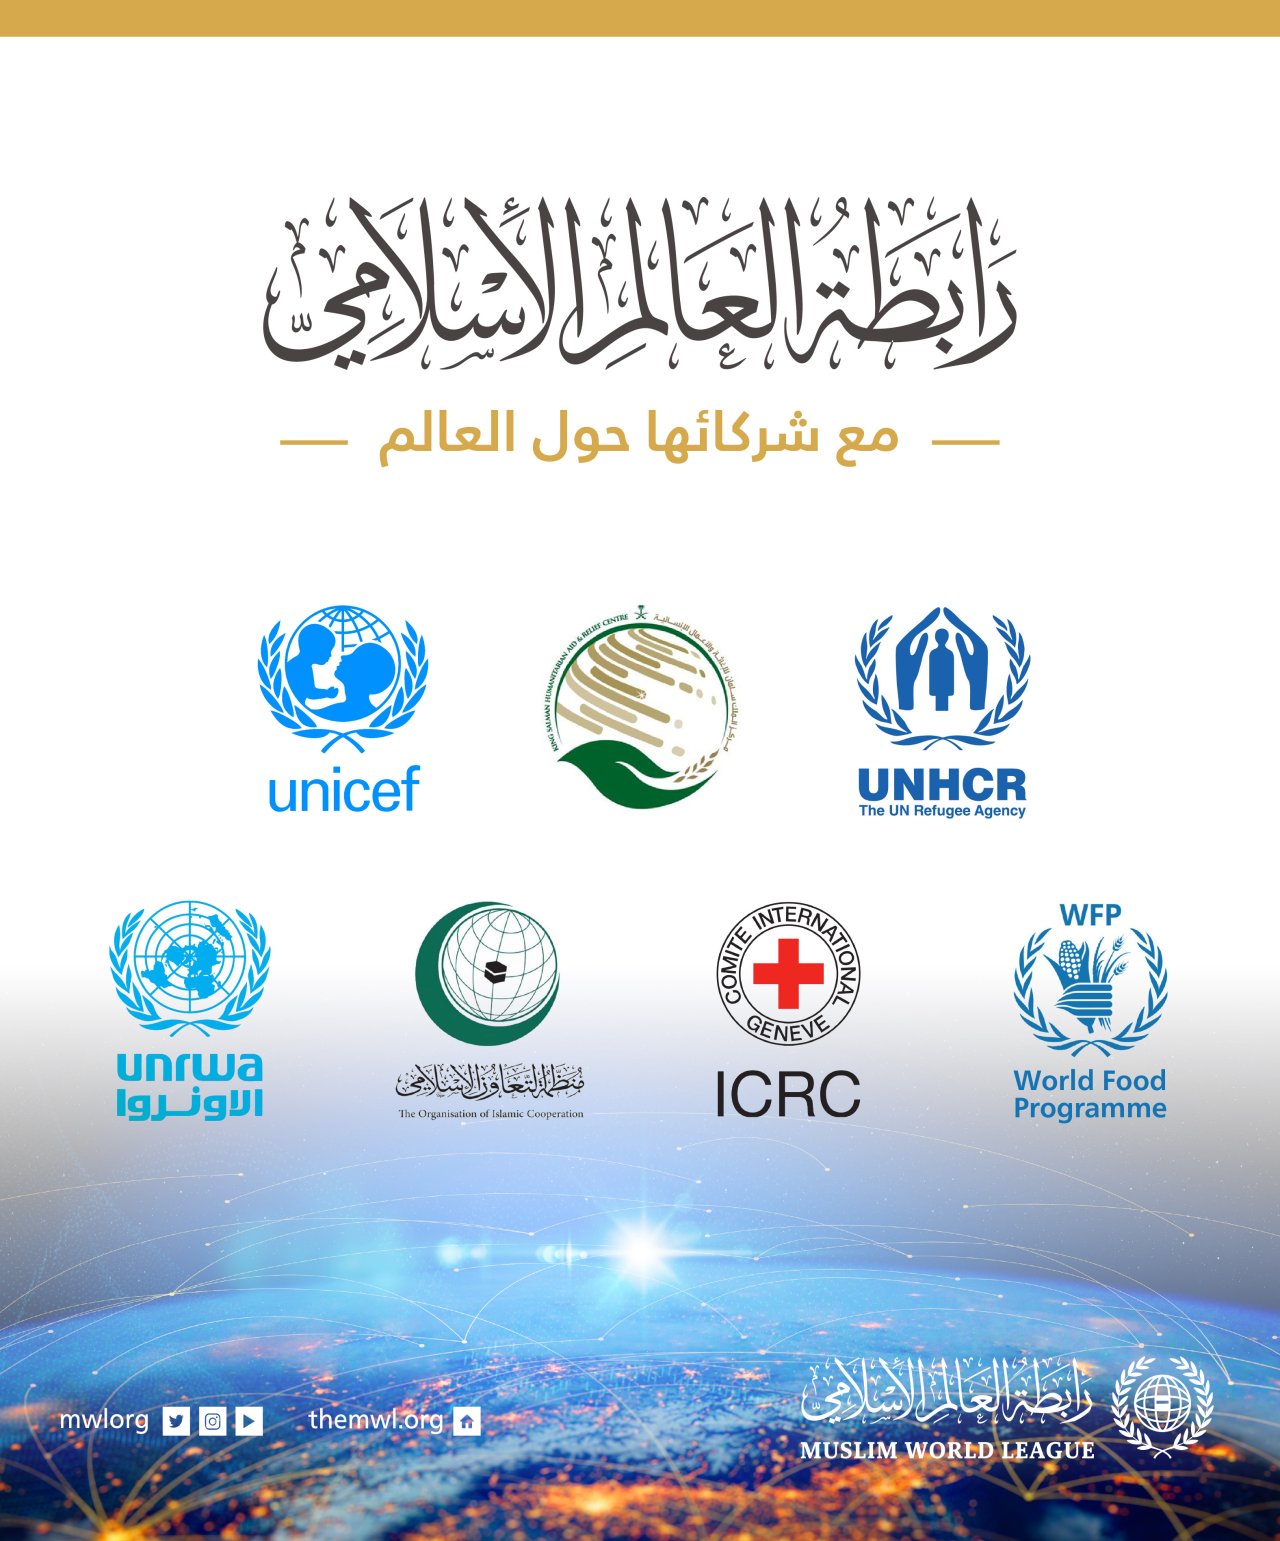 شراكات رابطة العالم الإسلامي‬⁩ مع كبرى المنظمات الدولية واجبٌ إسلاميٌّ وإنسانيٌّ؛ لمساندة القضايا العادلة، والوقوف مع المجتمعات المُحتاجة